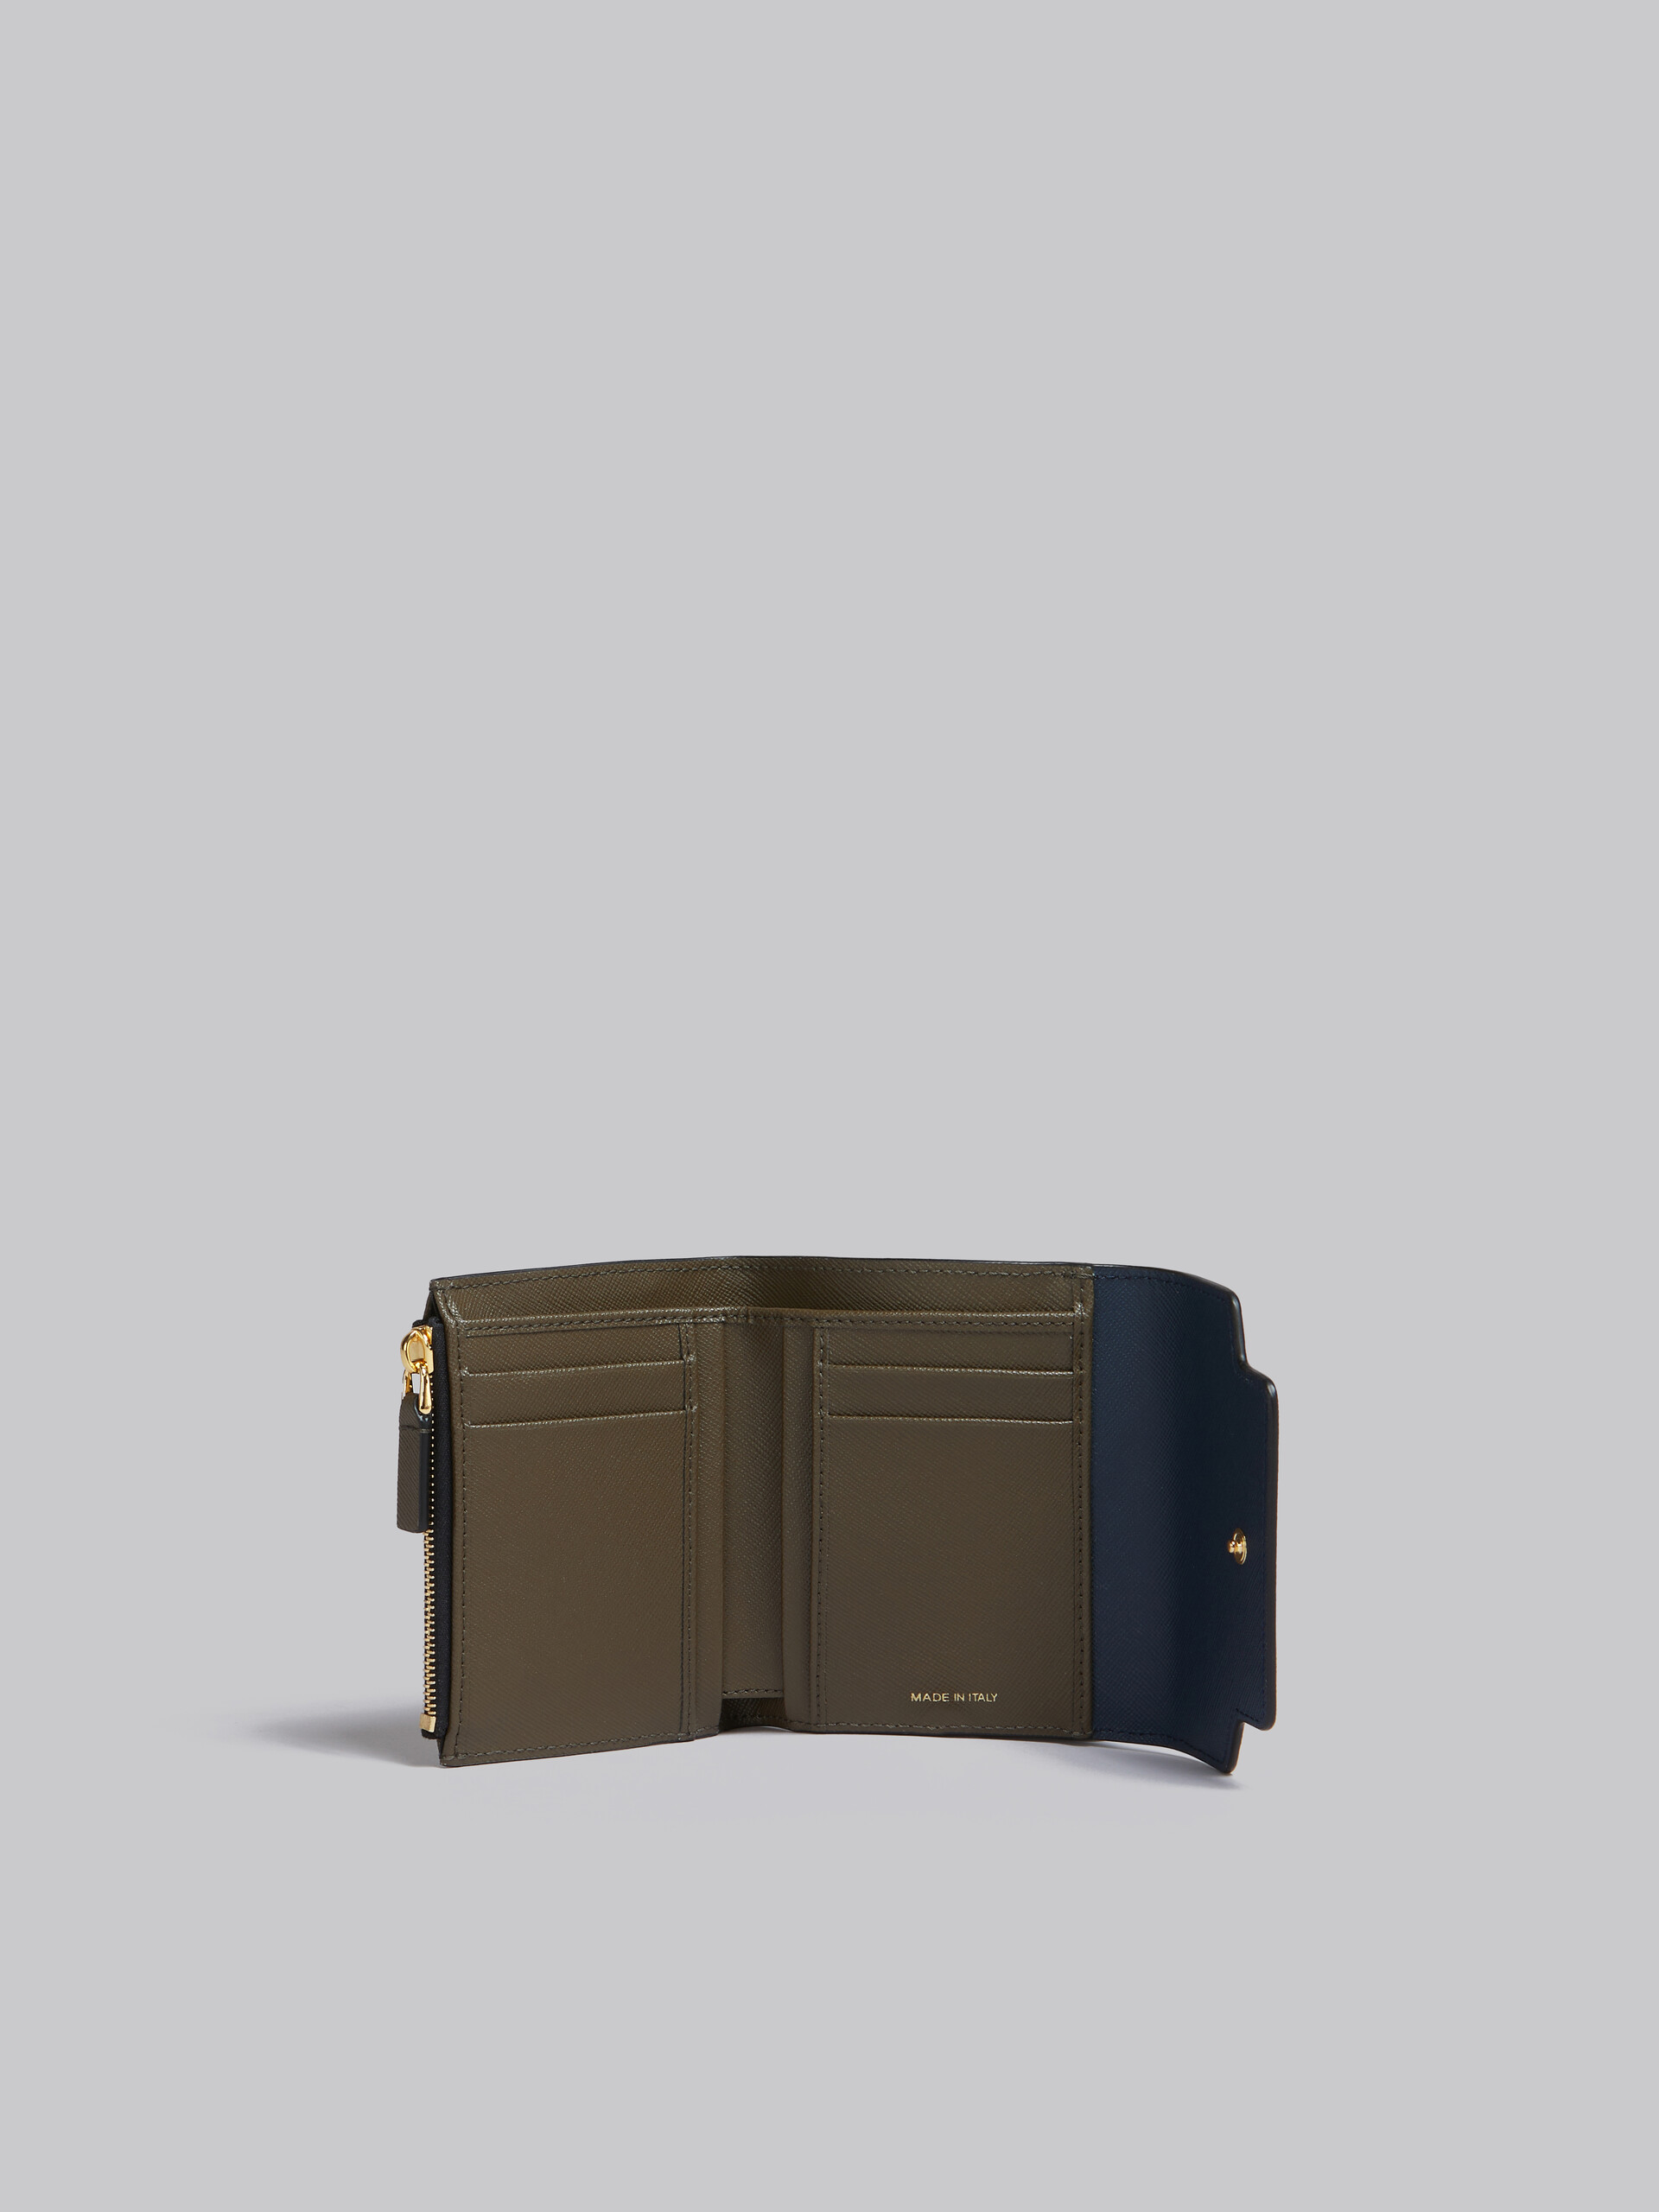 Portemonnaie aus Saffiano-Leder in Hellgrün, Weiß und Braun - Brieftaschen - Image 2